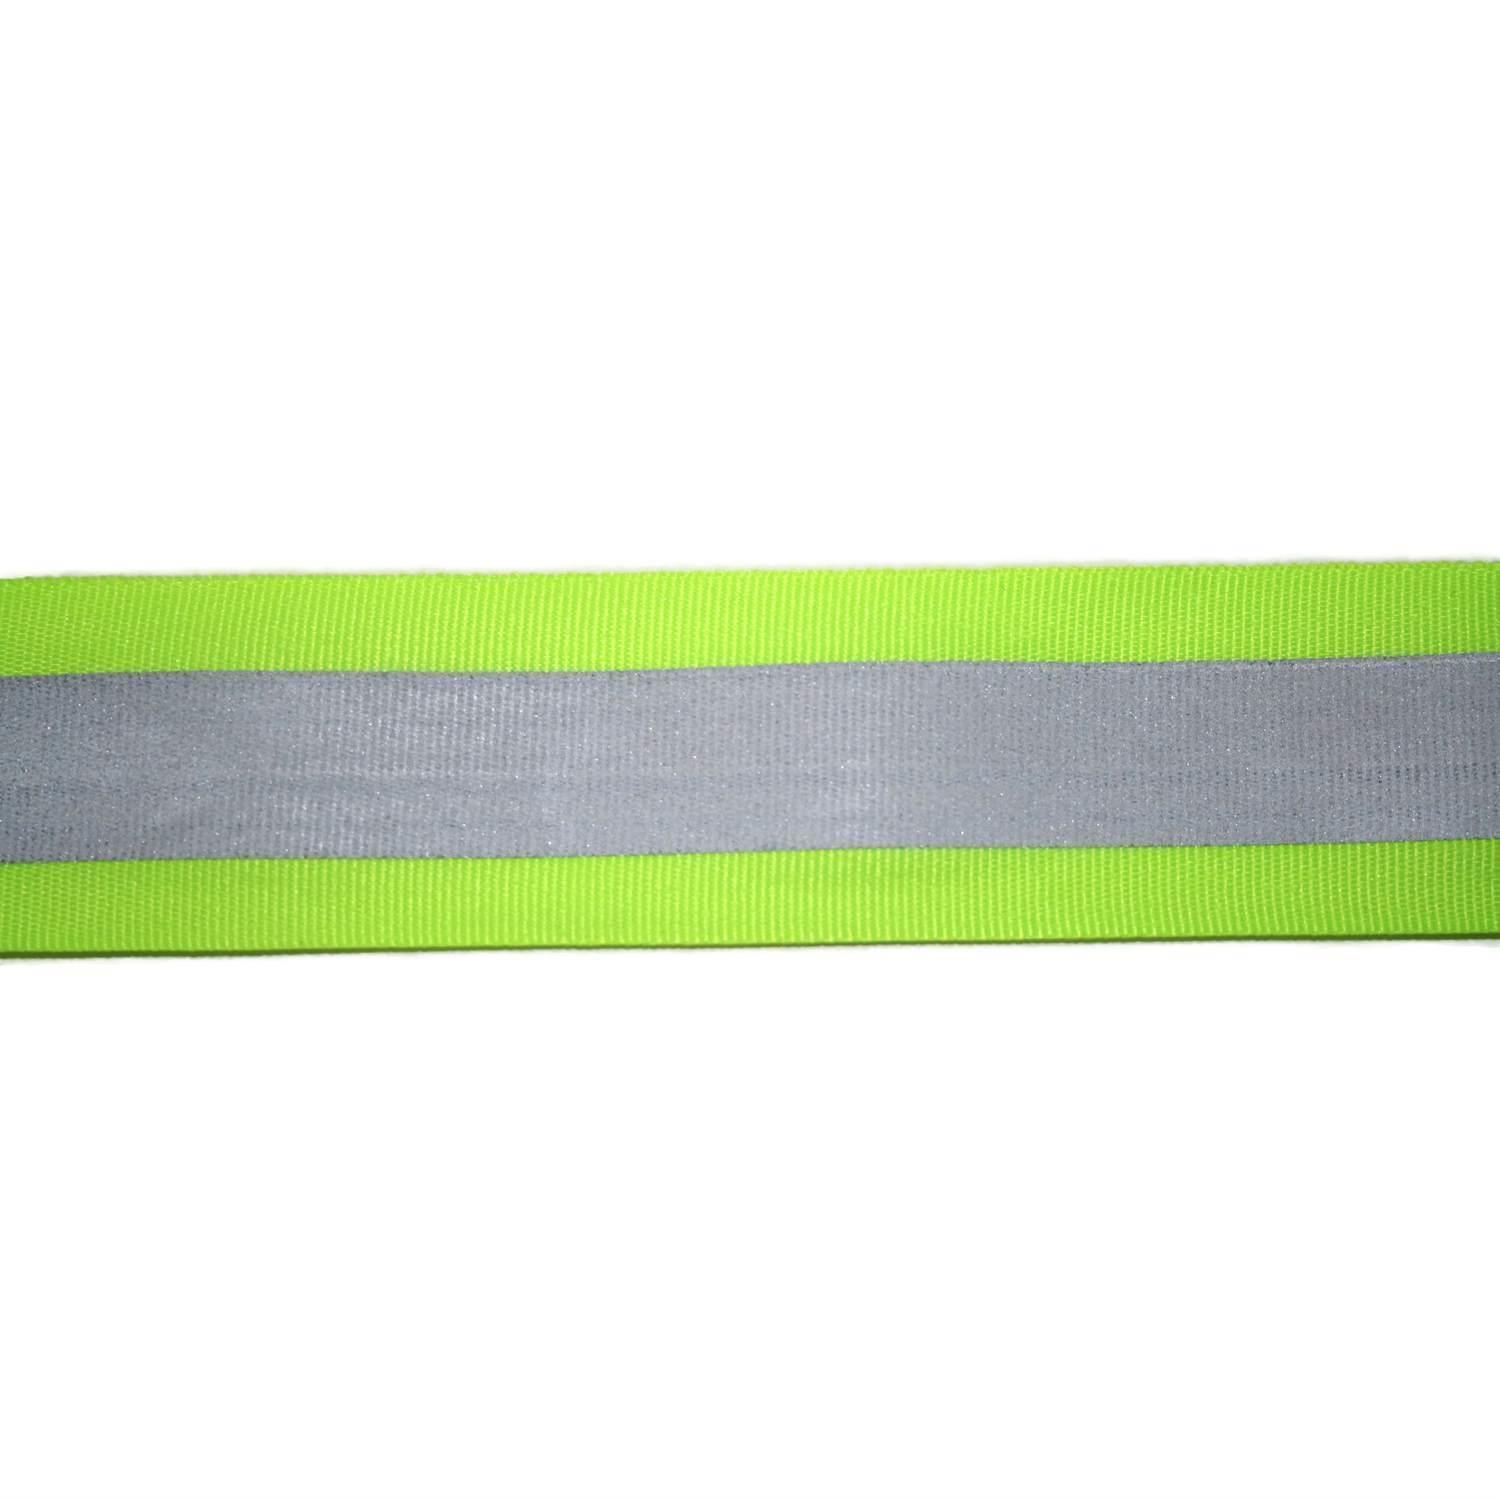 Reflektorband 60mm breit in 2 Farben gelbgrün-silber 10 Meter